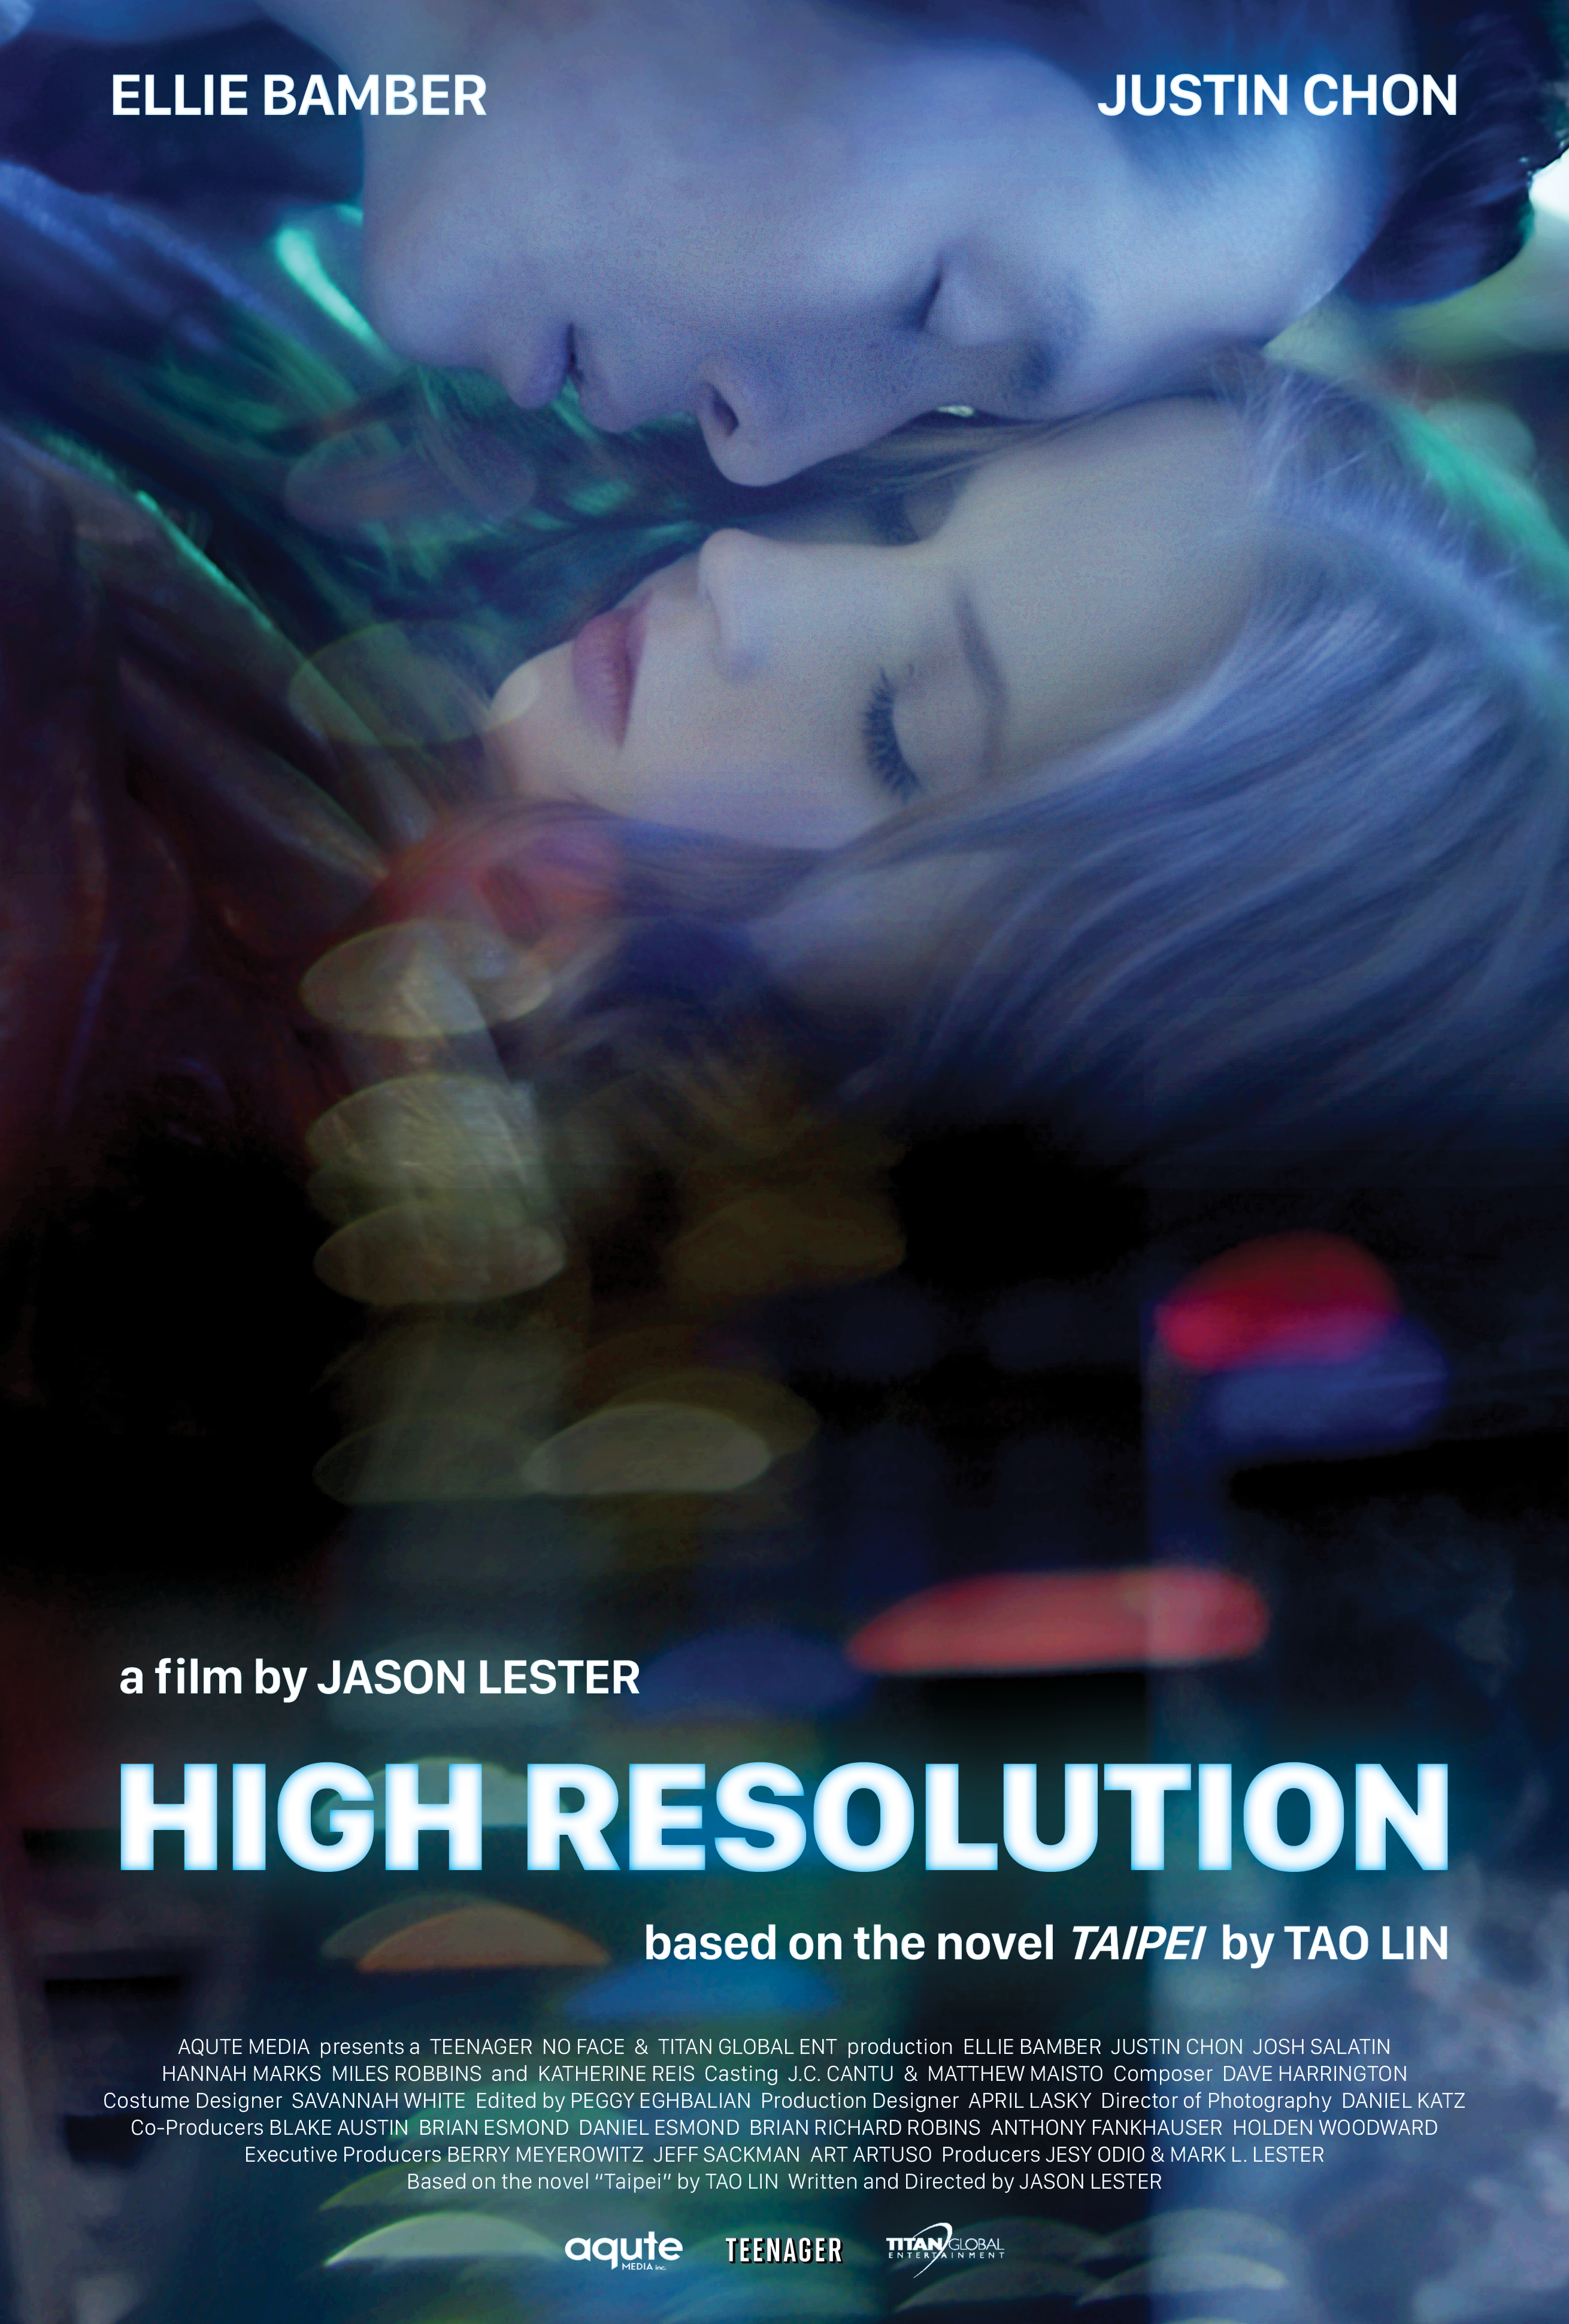 Nonton film High Resolution layarkaca21 indoxx1 ganool online streaming terbaru